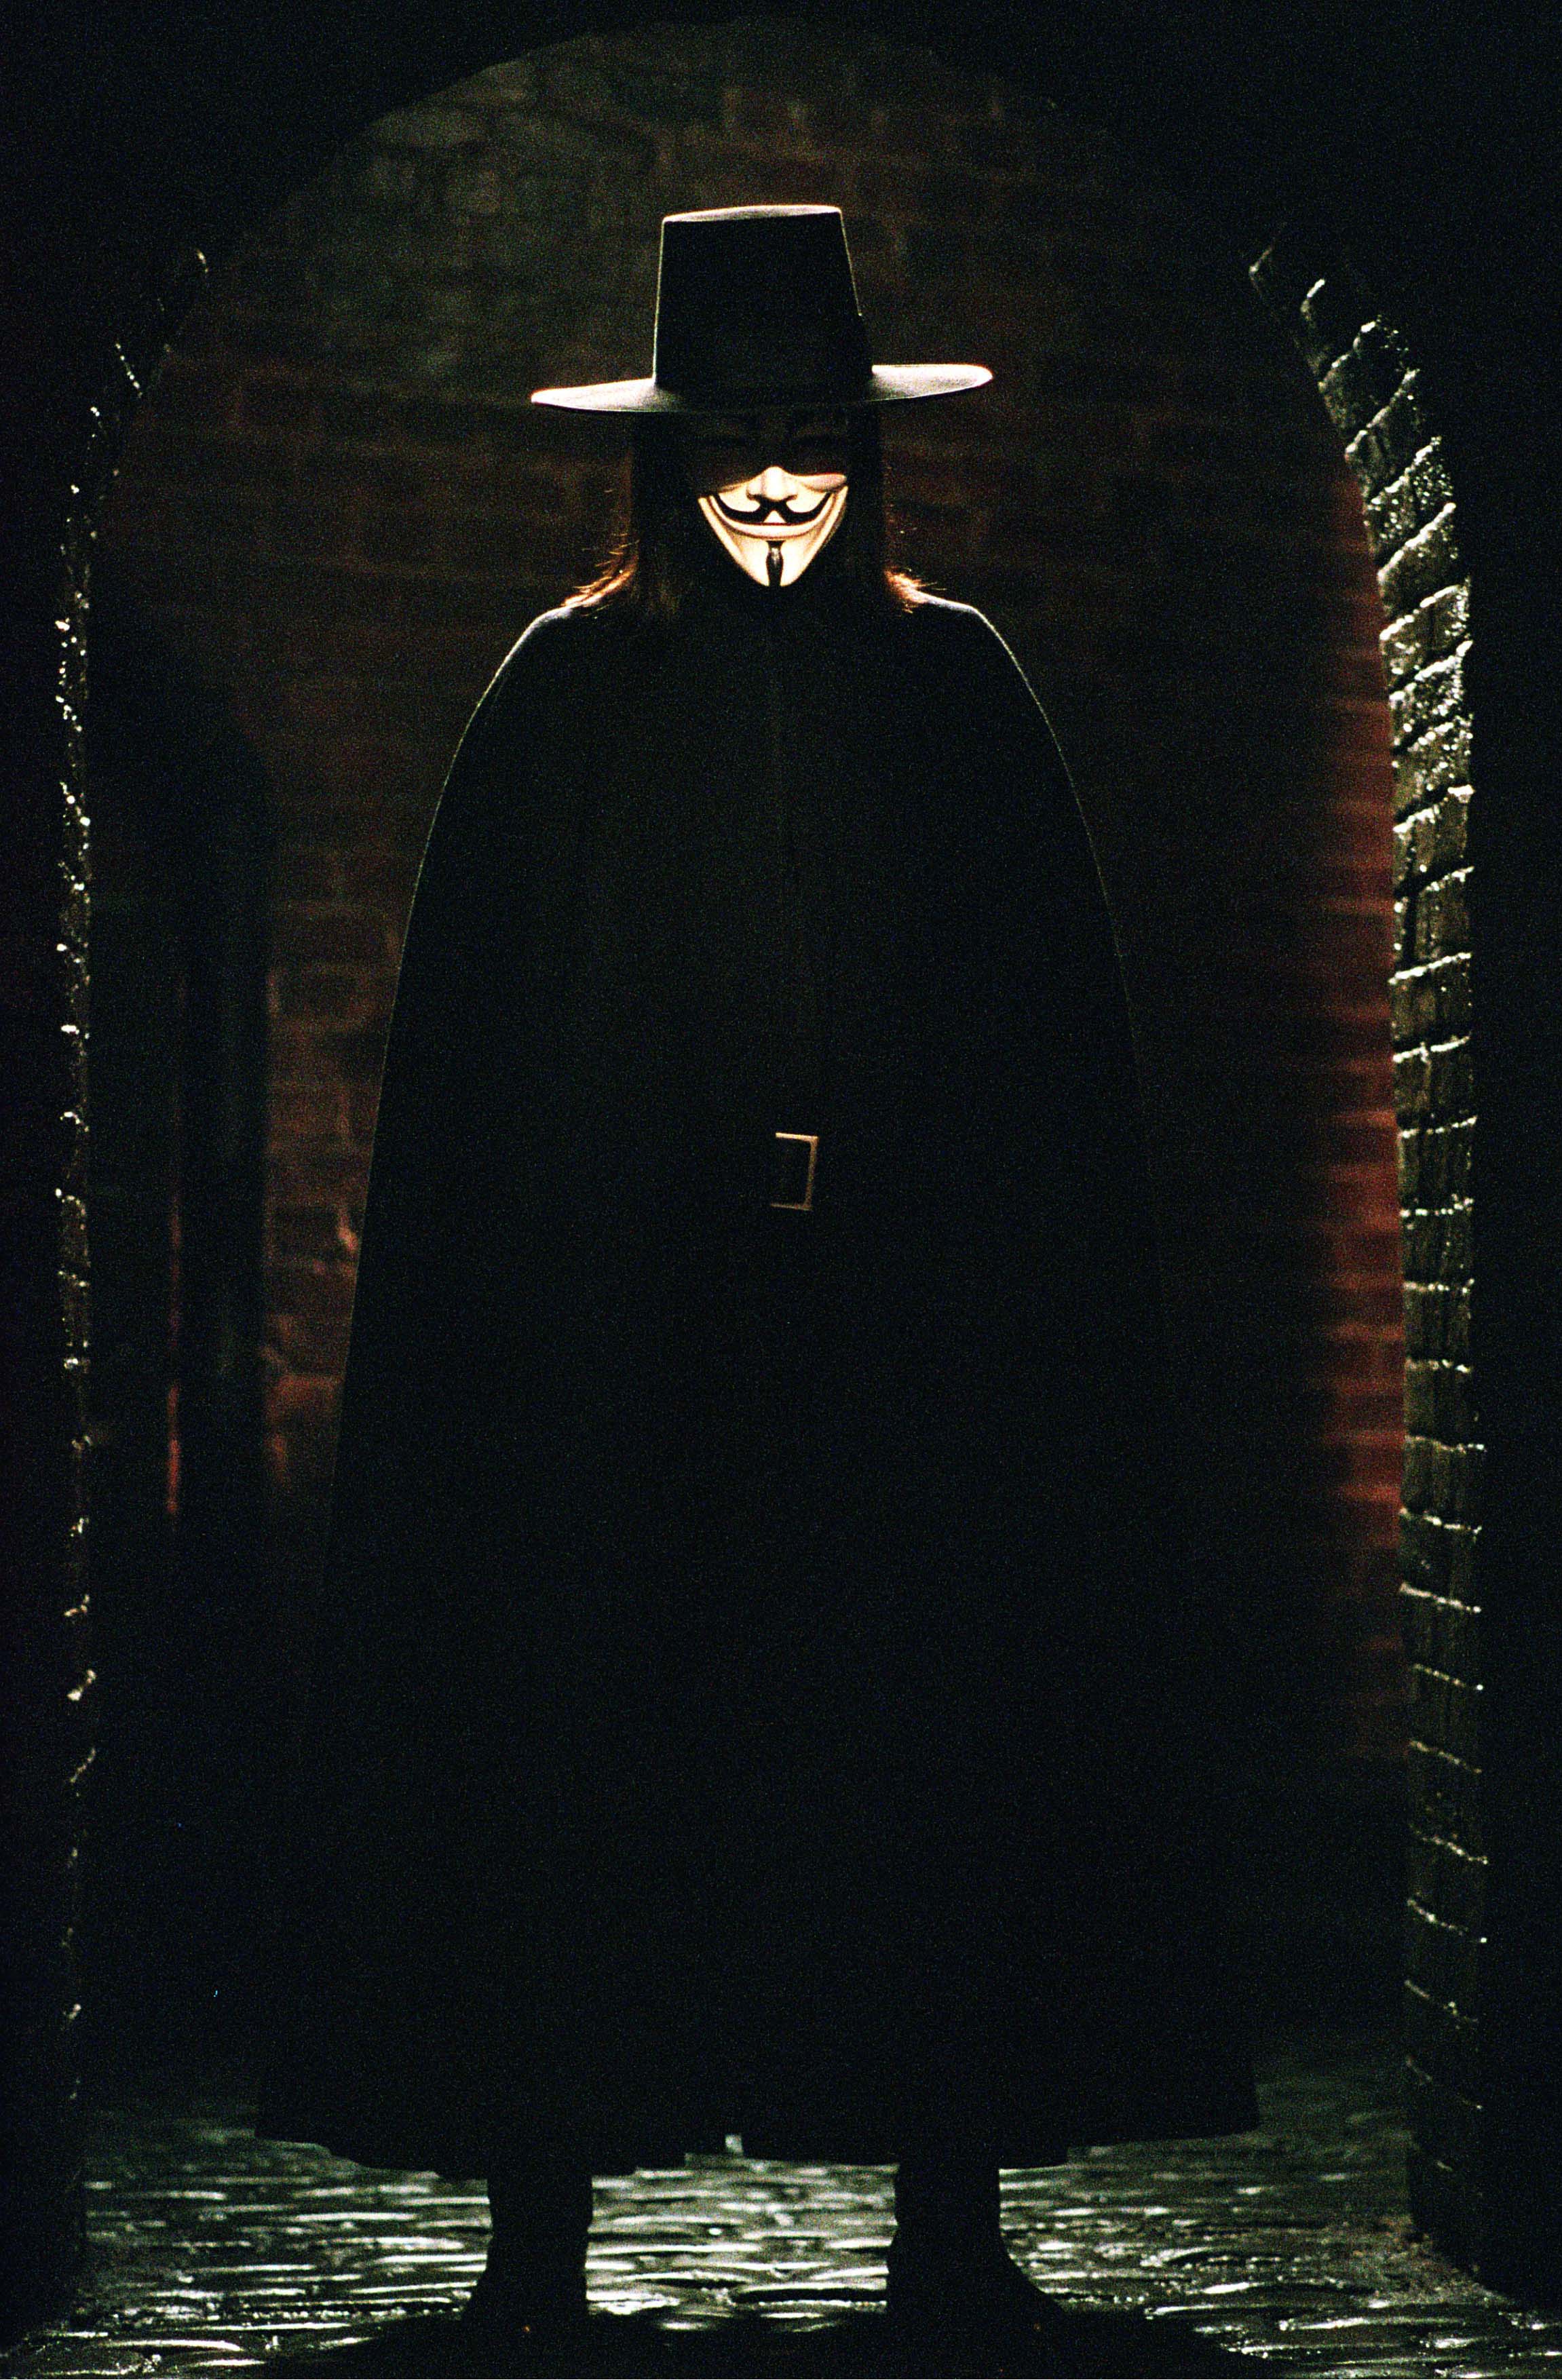 Hackerkollektivet har byggt upp mycket av sin estetik och framtoning på karaktären "V" i filmen och serieboken "V for Vendetta".